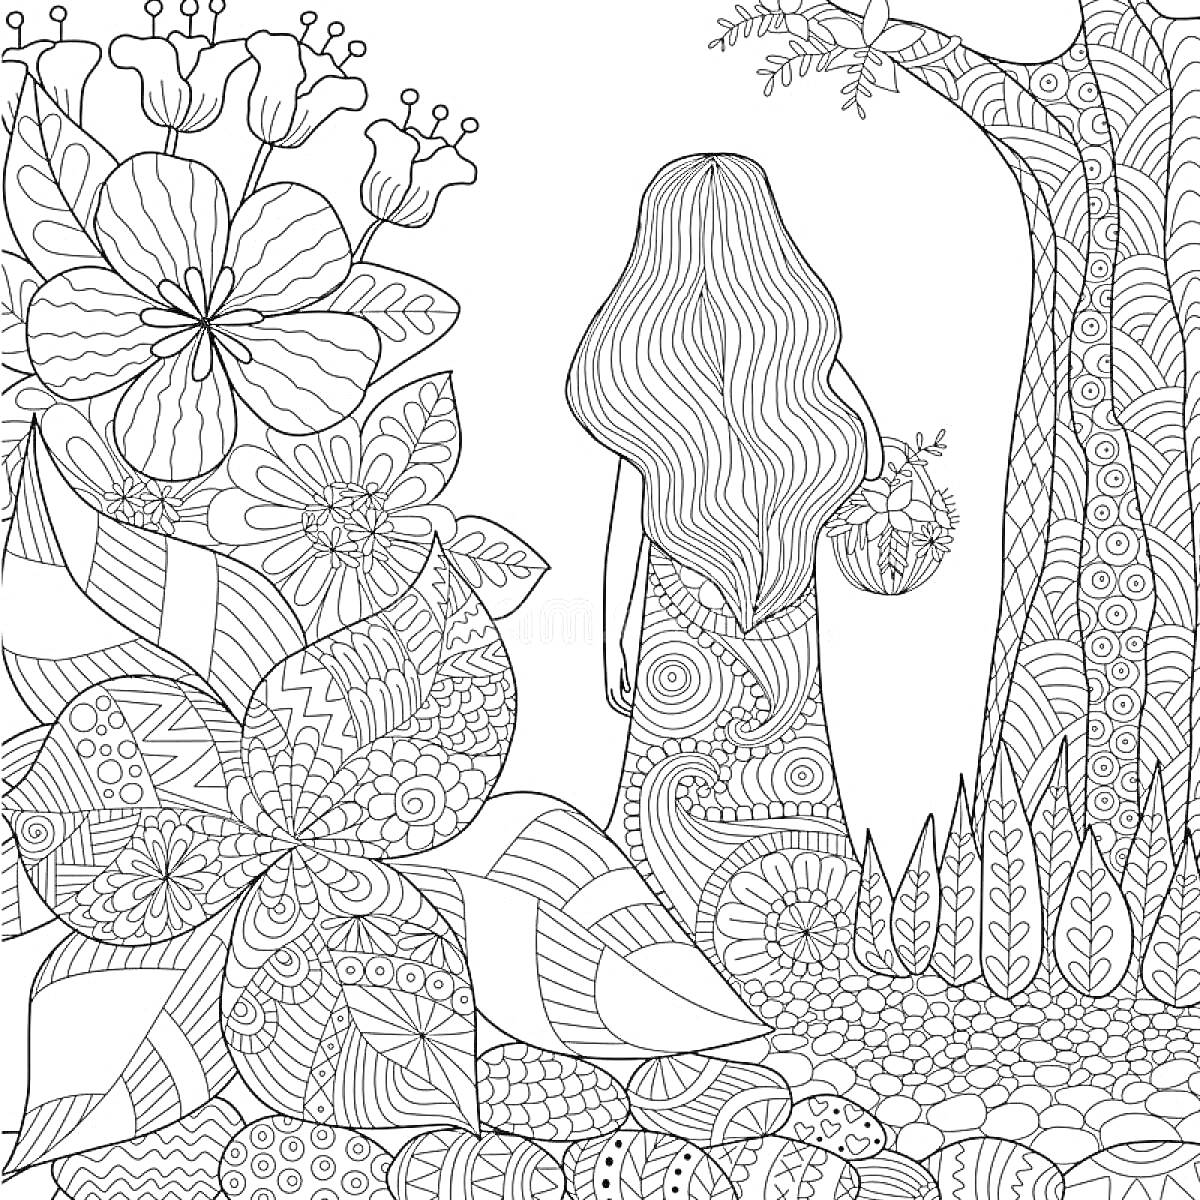 Девочка в волшебном саду с большими цветами и деревом